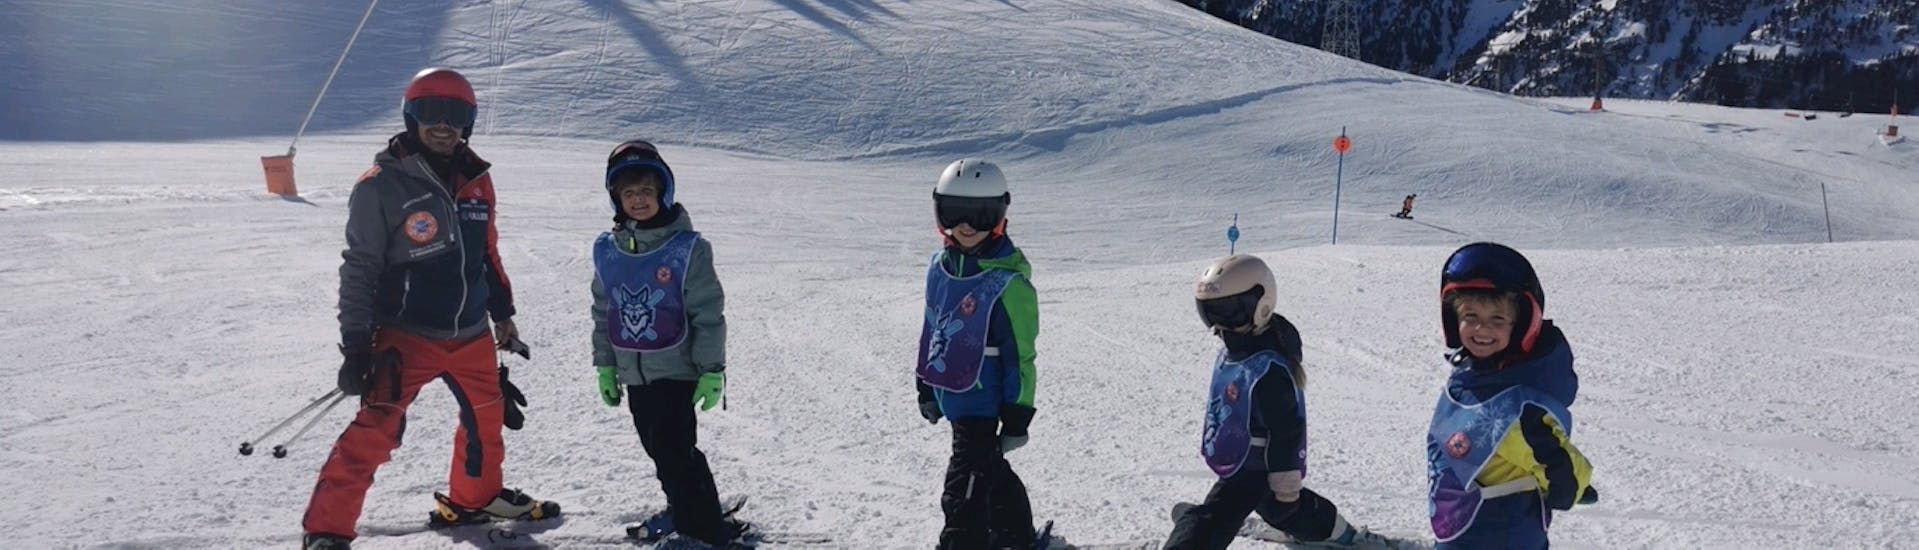 Lezioni di sci per bambini a partire da 6 anni per tutti i livelli.